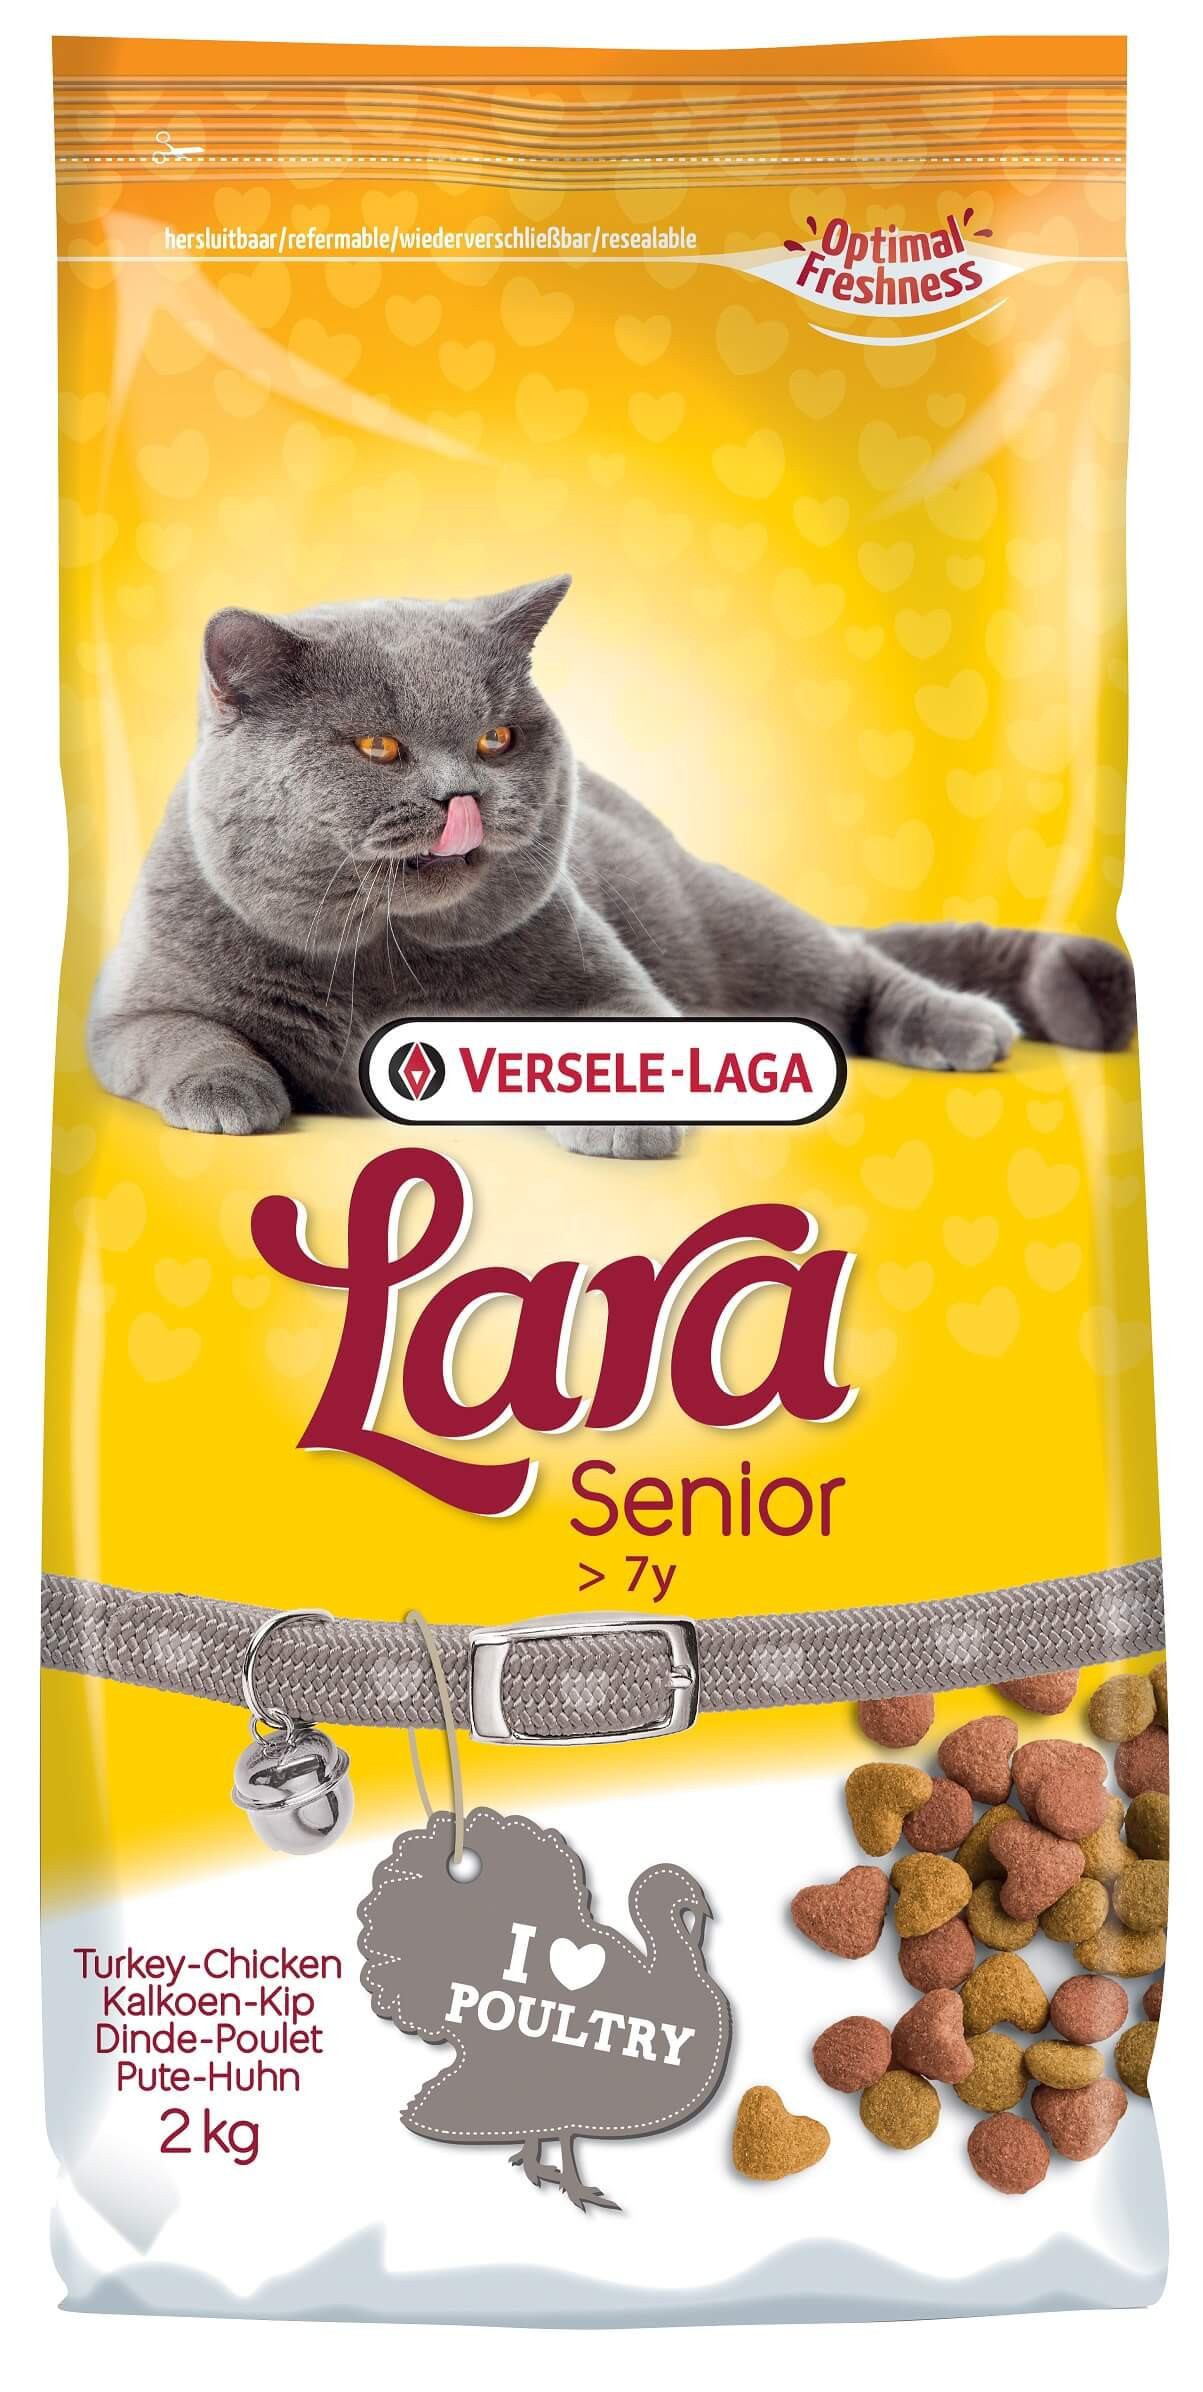 Versele-Laga Lara Senior Katzenfutter